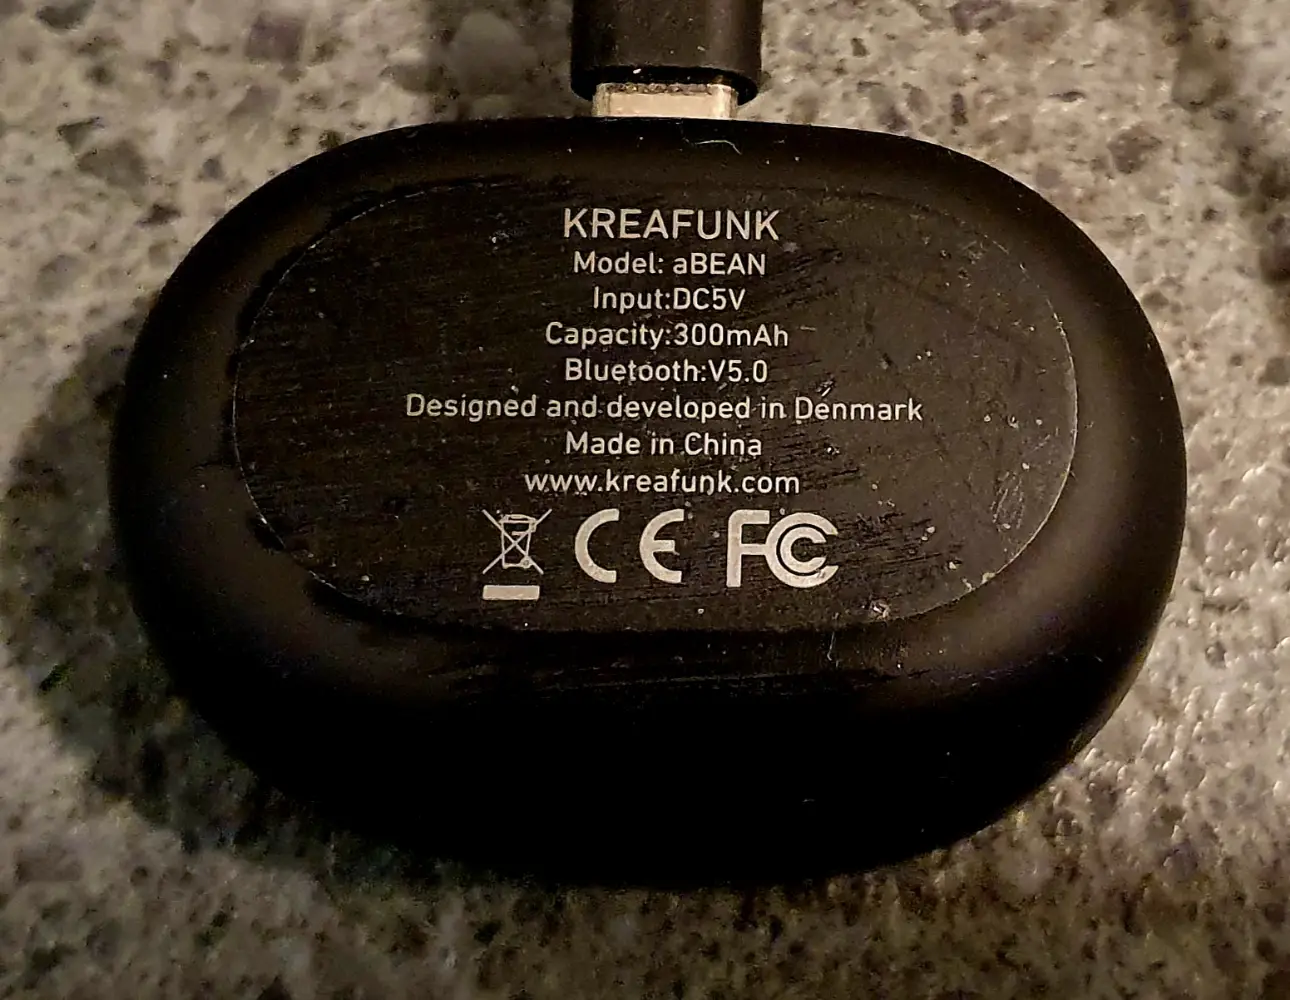 Kreafunk Headset